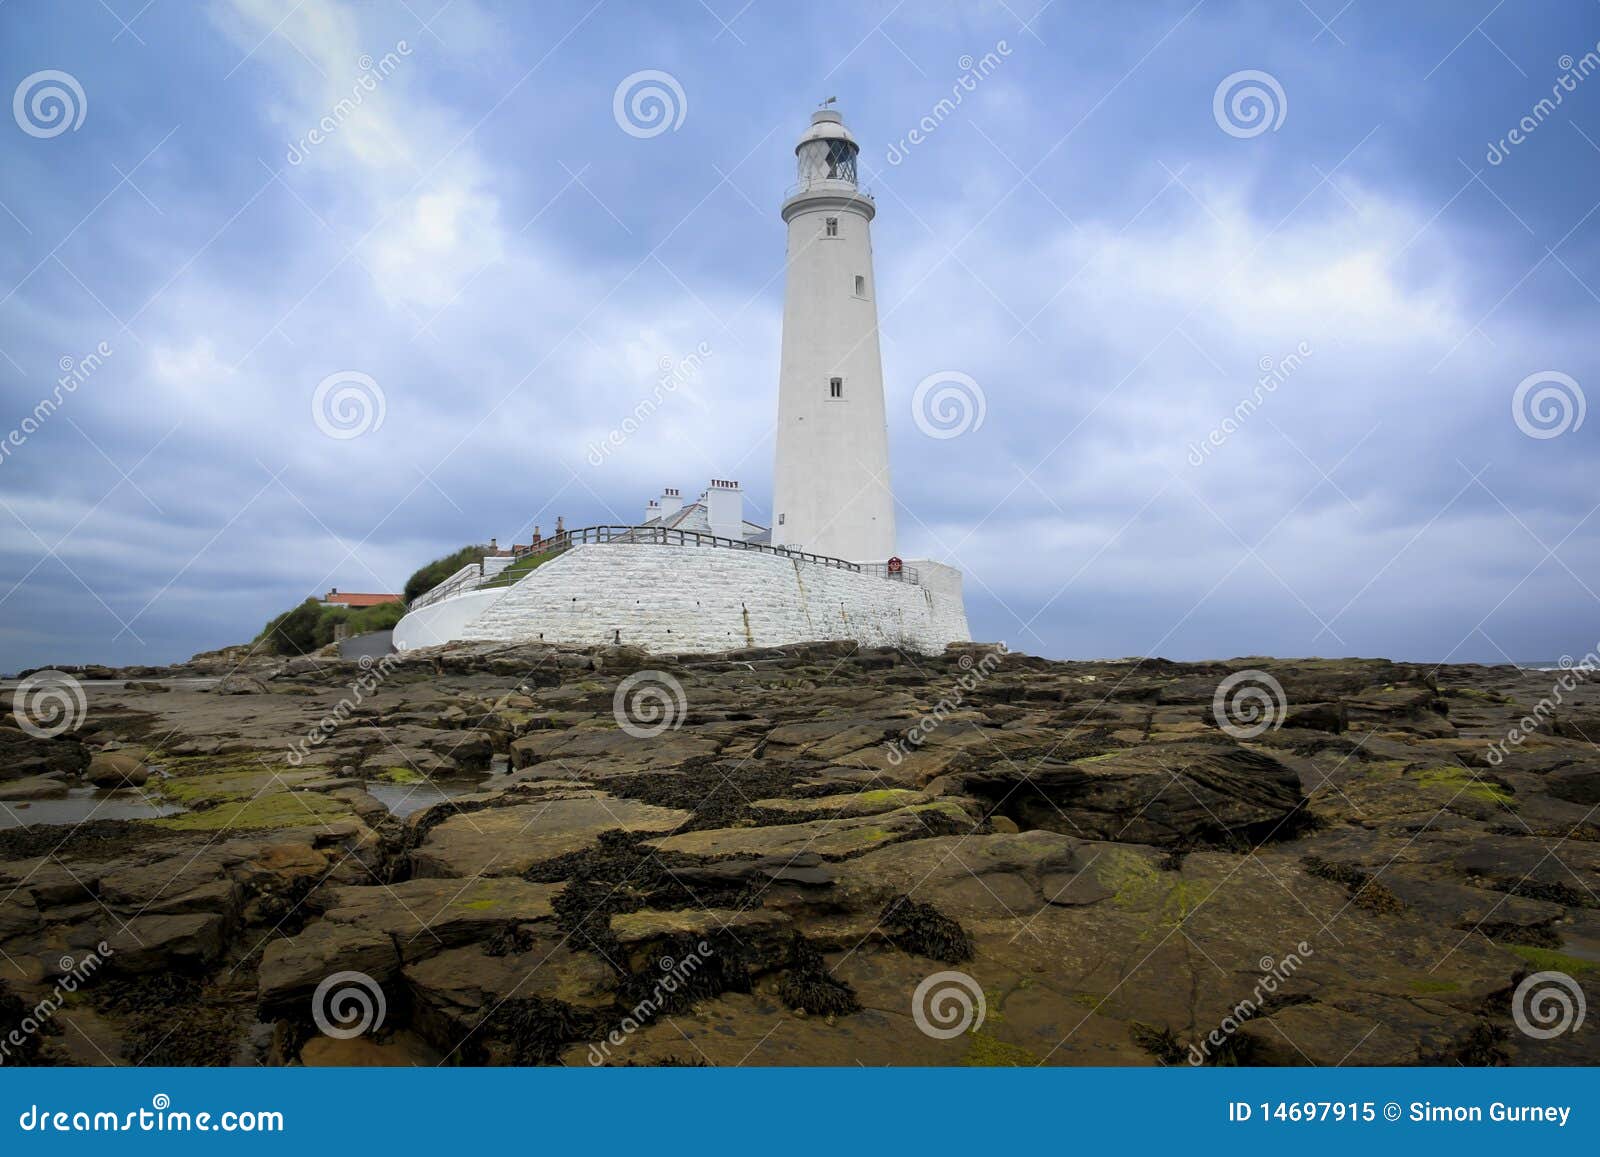 st marys lighthouse whitley bay uk